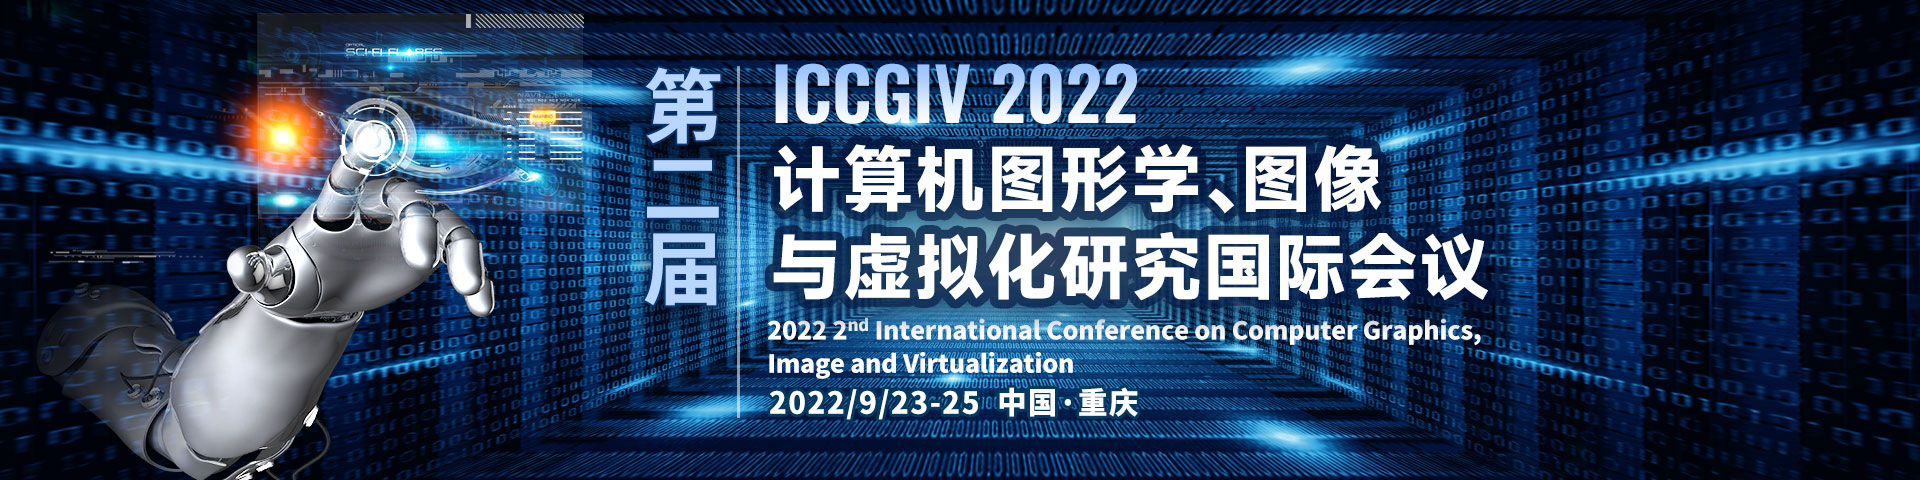 9月-重庆站-ICCGIV-艾思平台上线平台1920x480.jpg